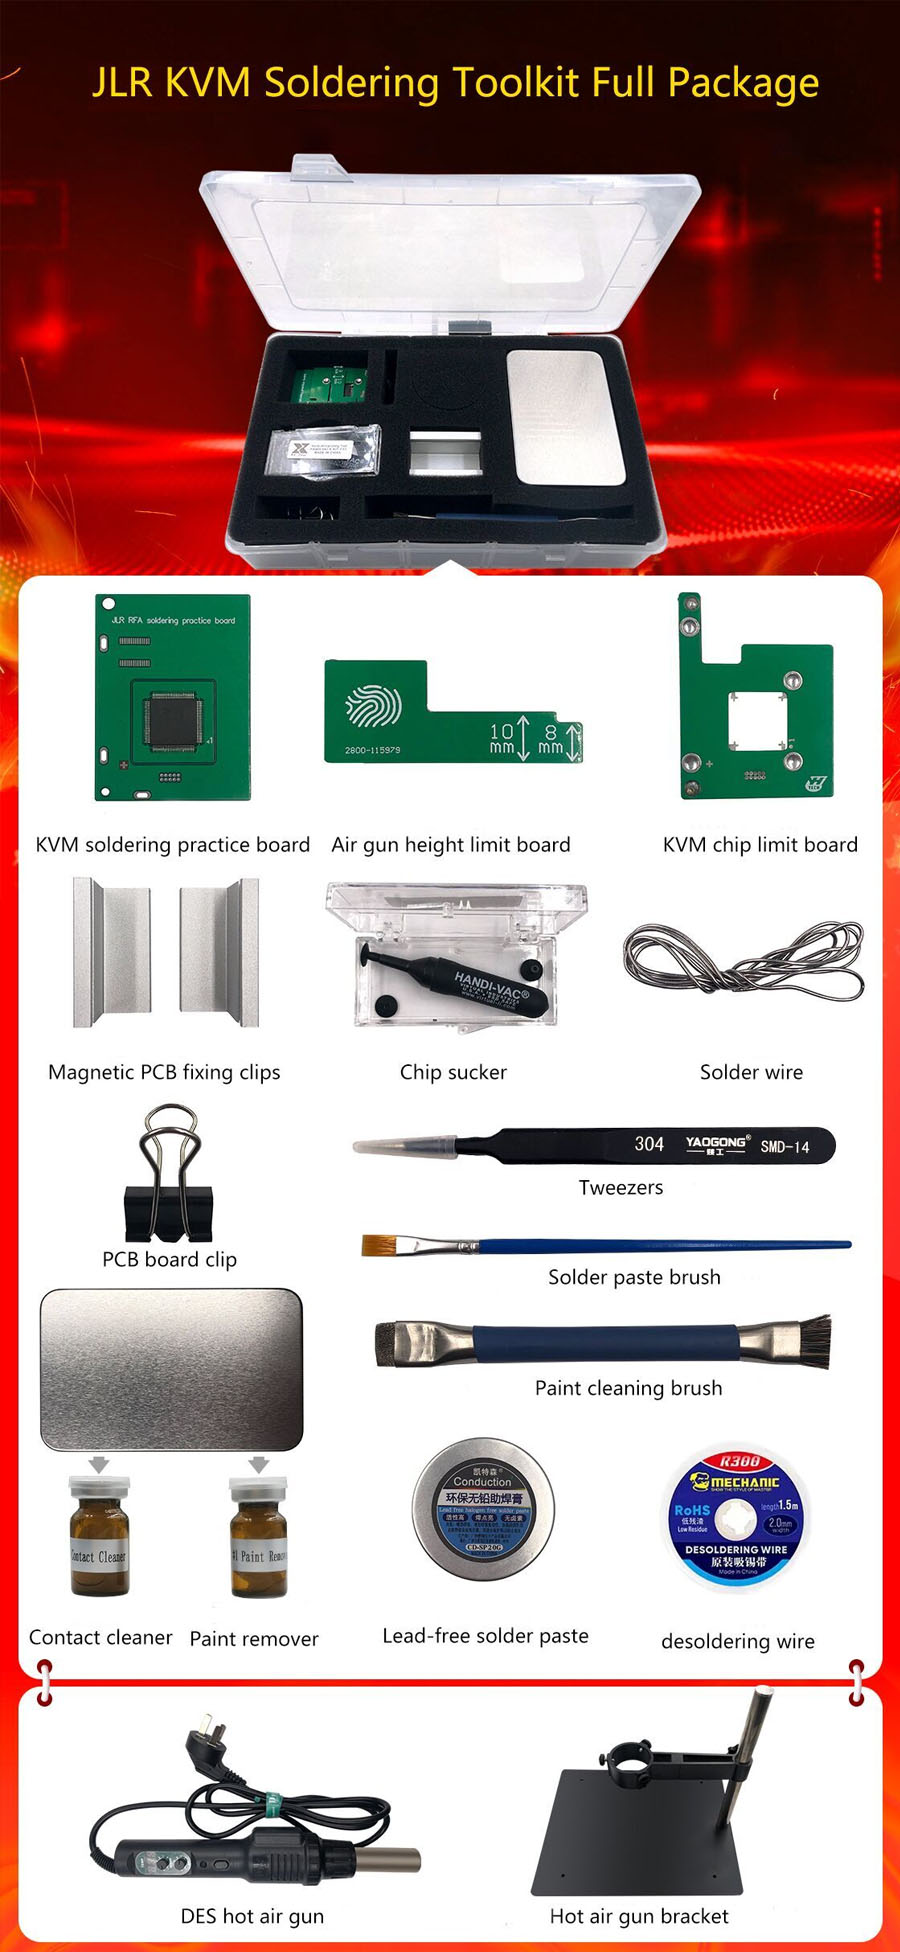 yanhua jlr kvm soldering toolkit